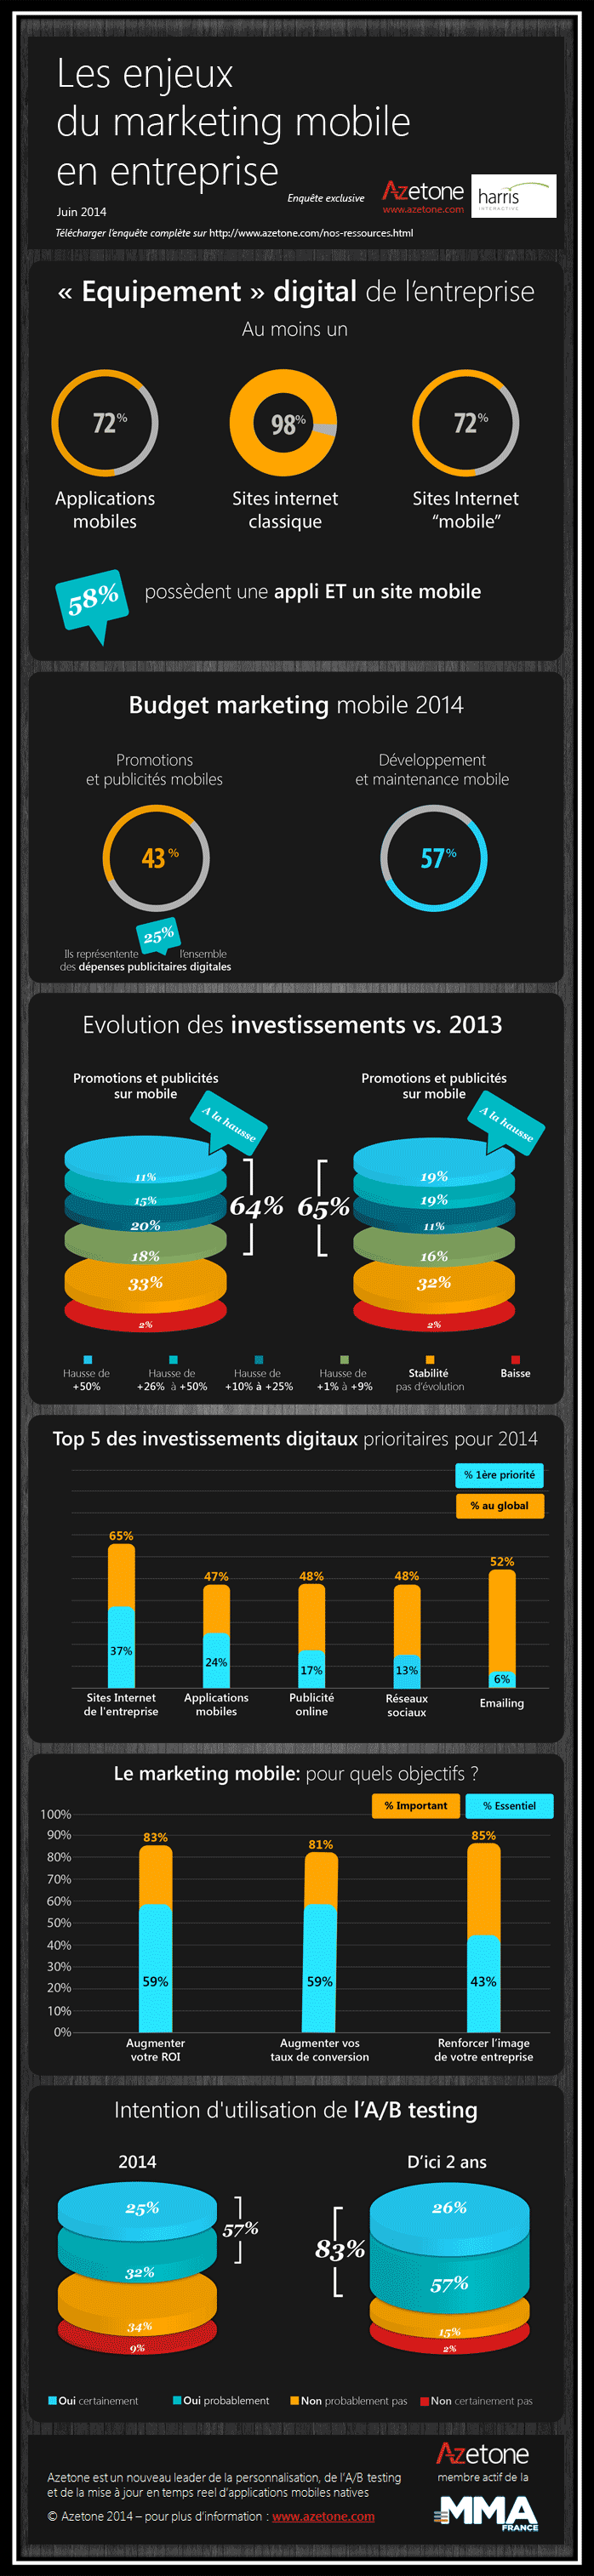 Infographie Azetone Les enjeux du marketing mobile en entreprise